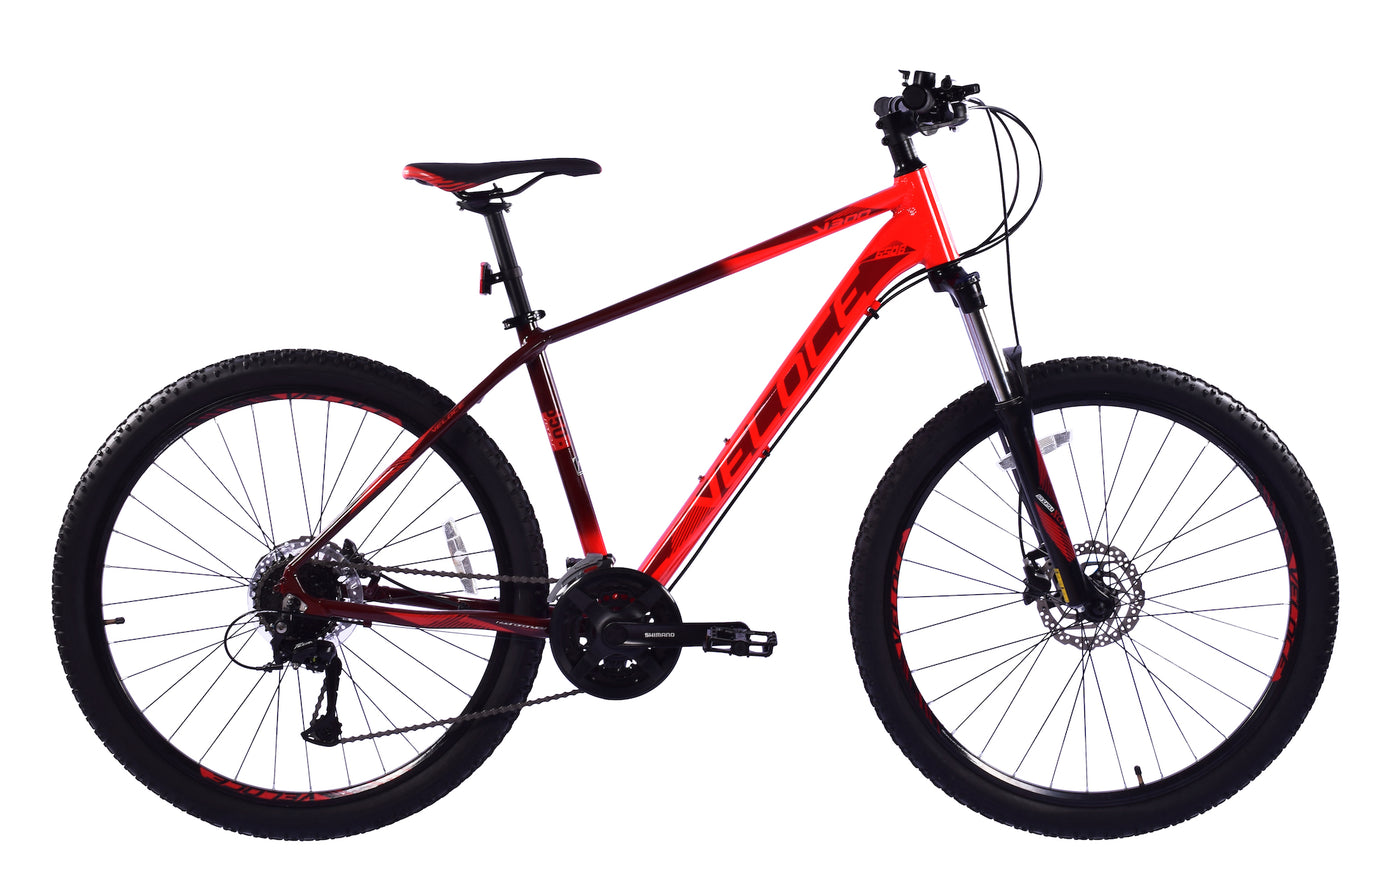 Veloce V300 Bicycle - Black Red